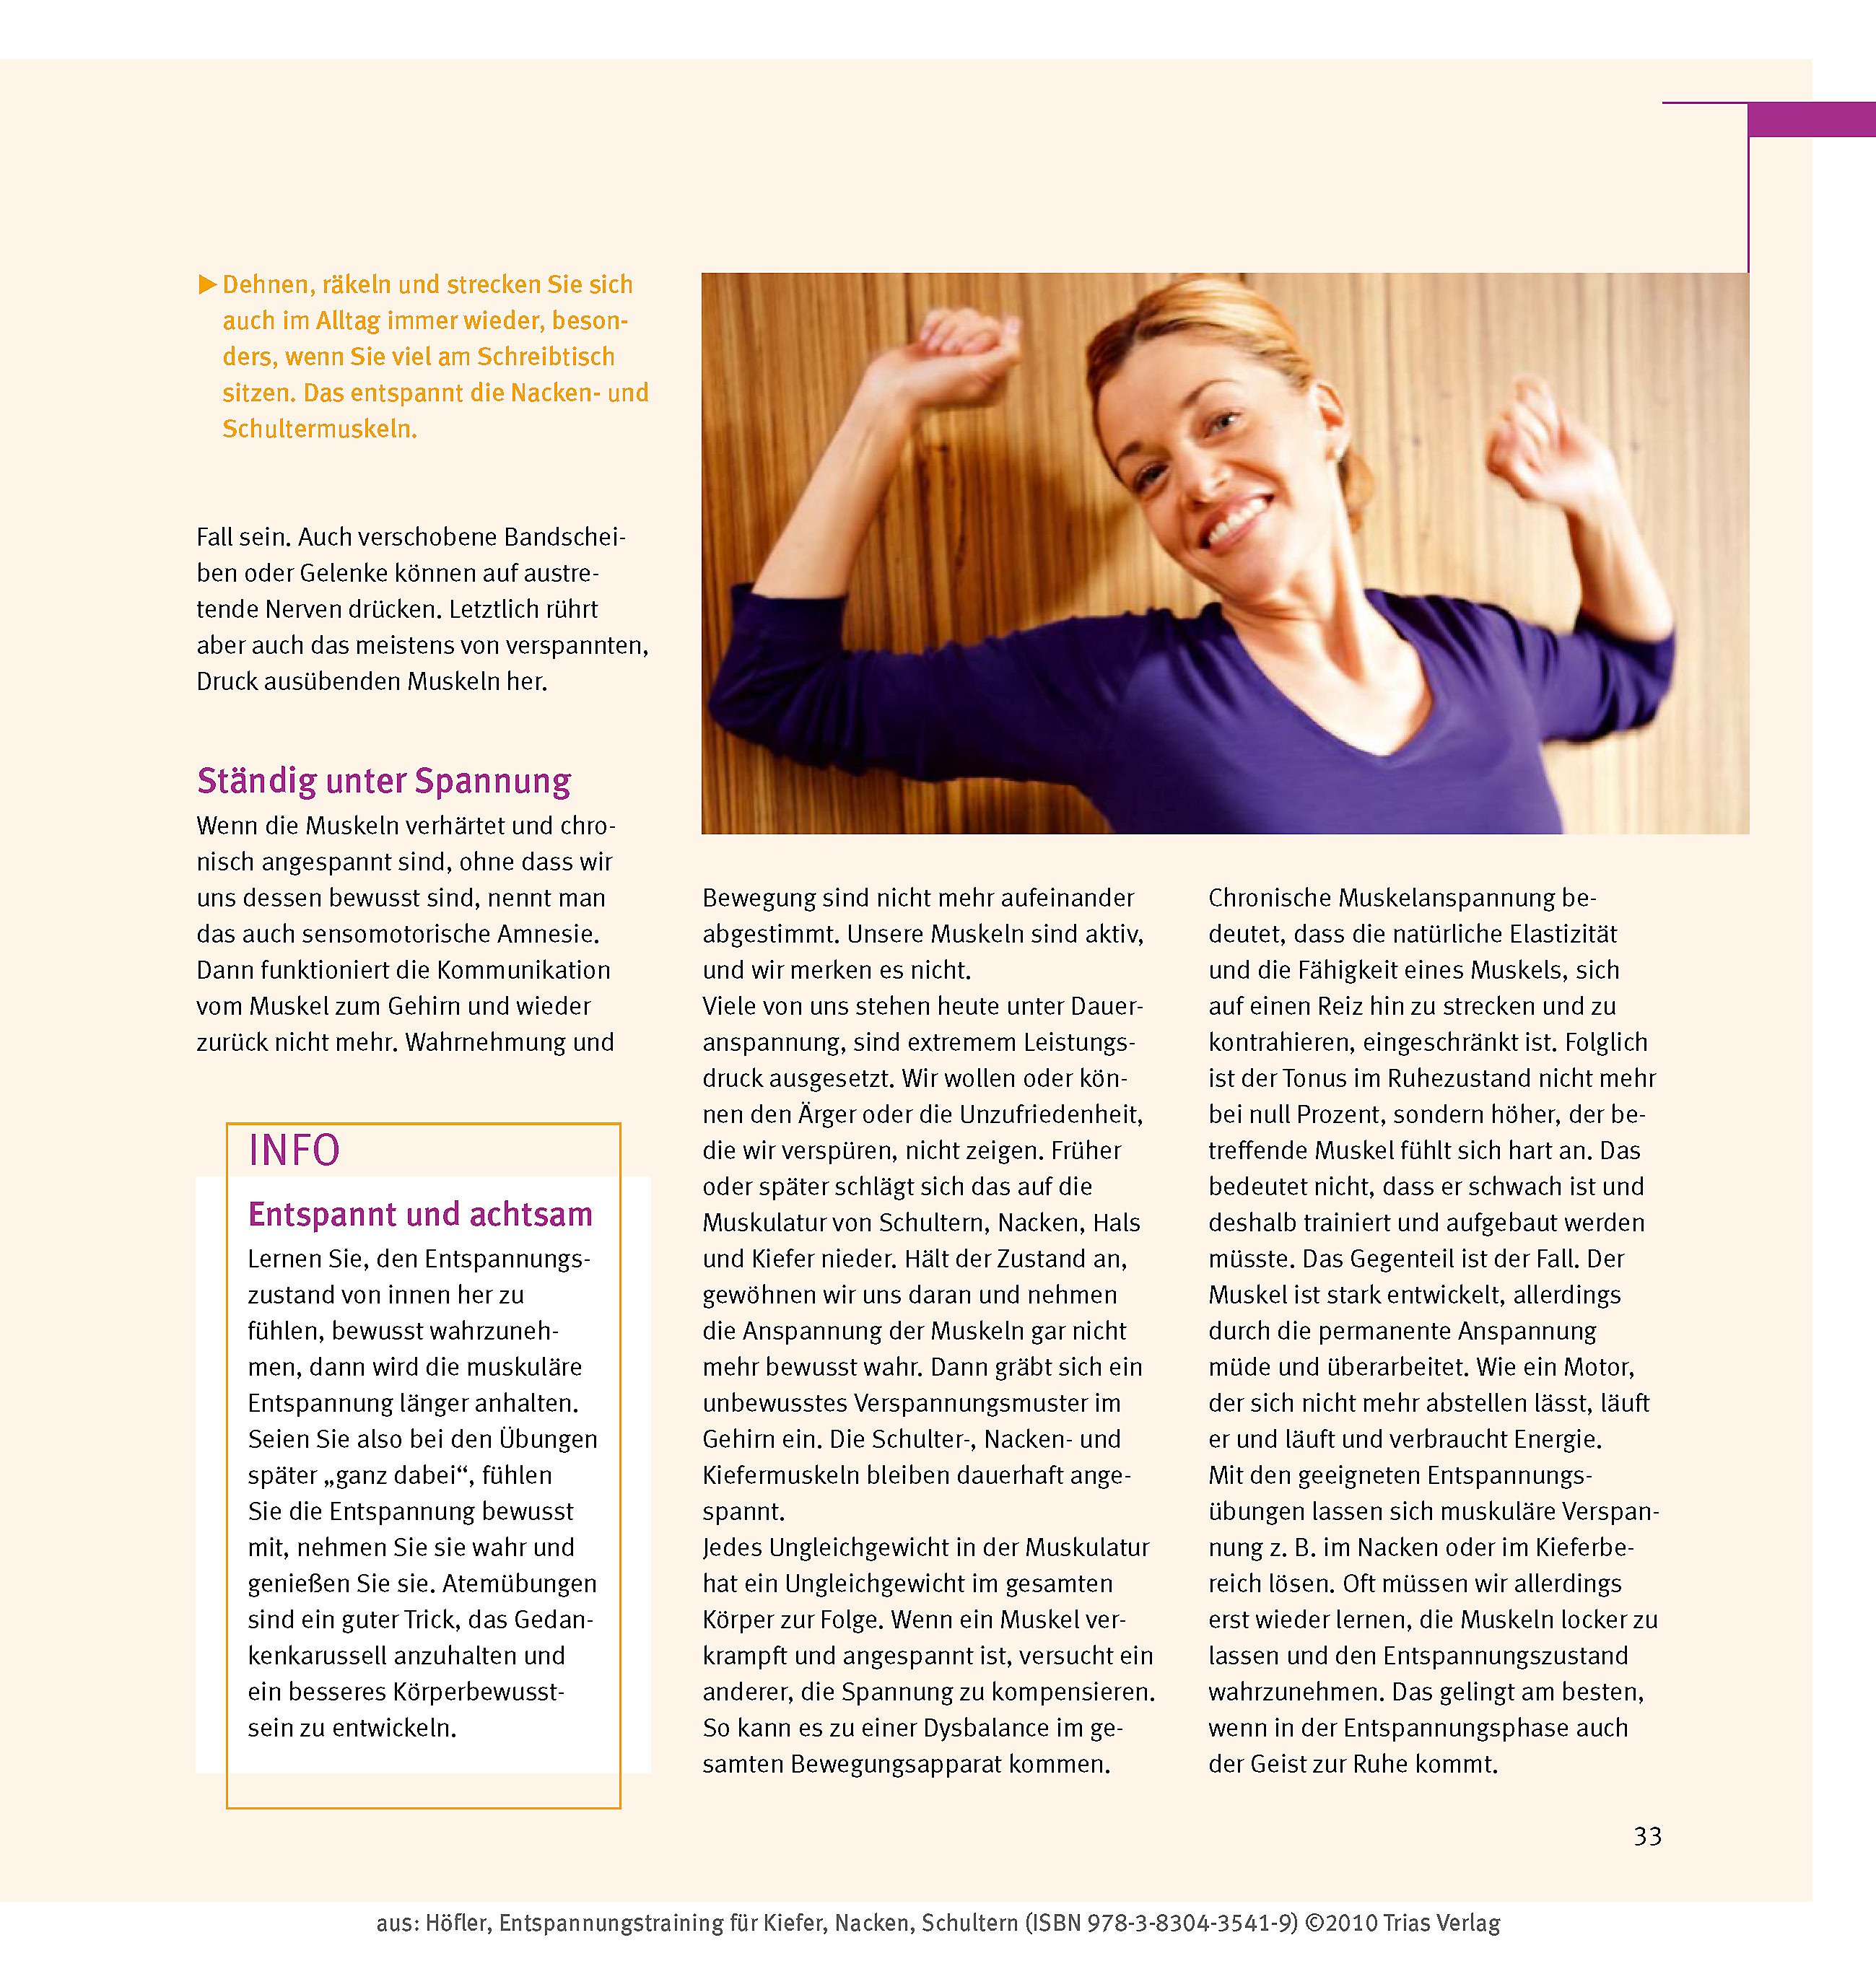 EntspannungsTraining für Kiefer Nacken Schultern 10 Prograe zu
Loslassen und Wohlfühlen PDF Epub-Ebook